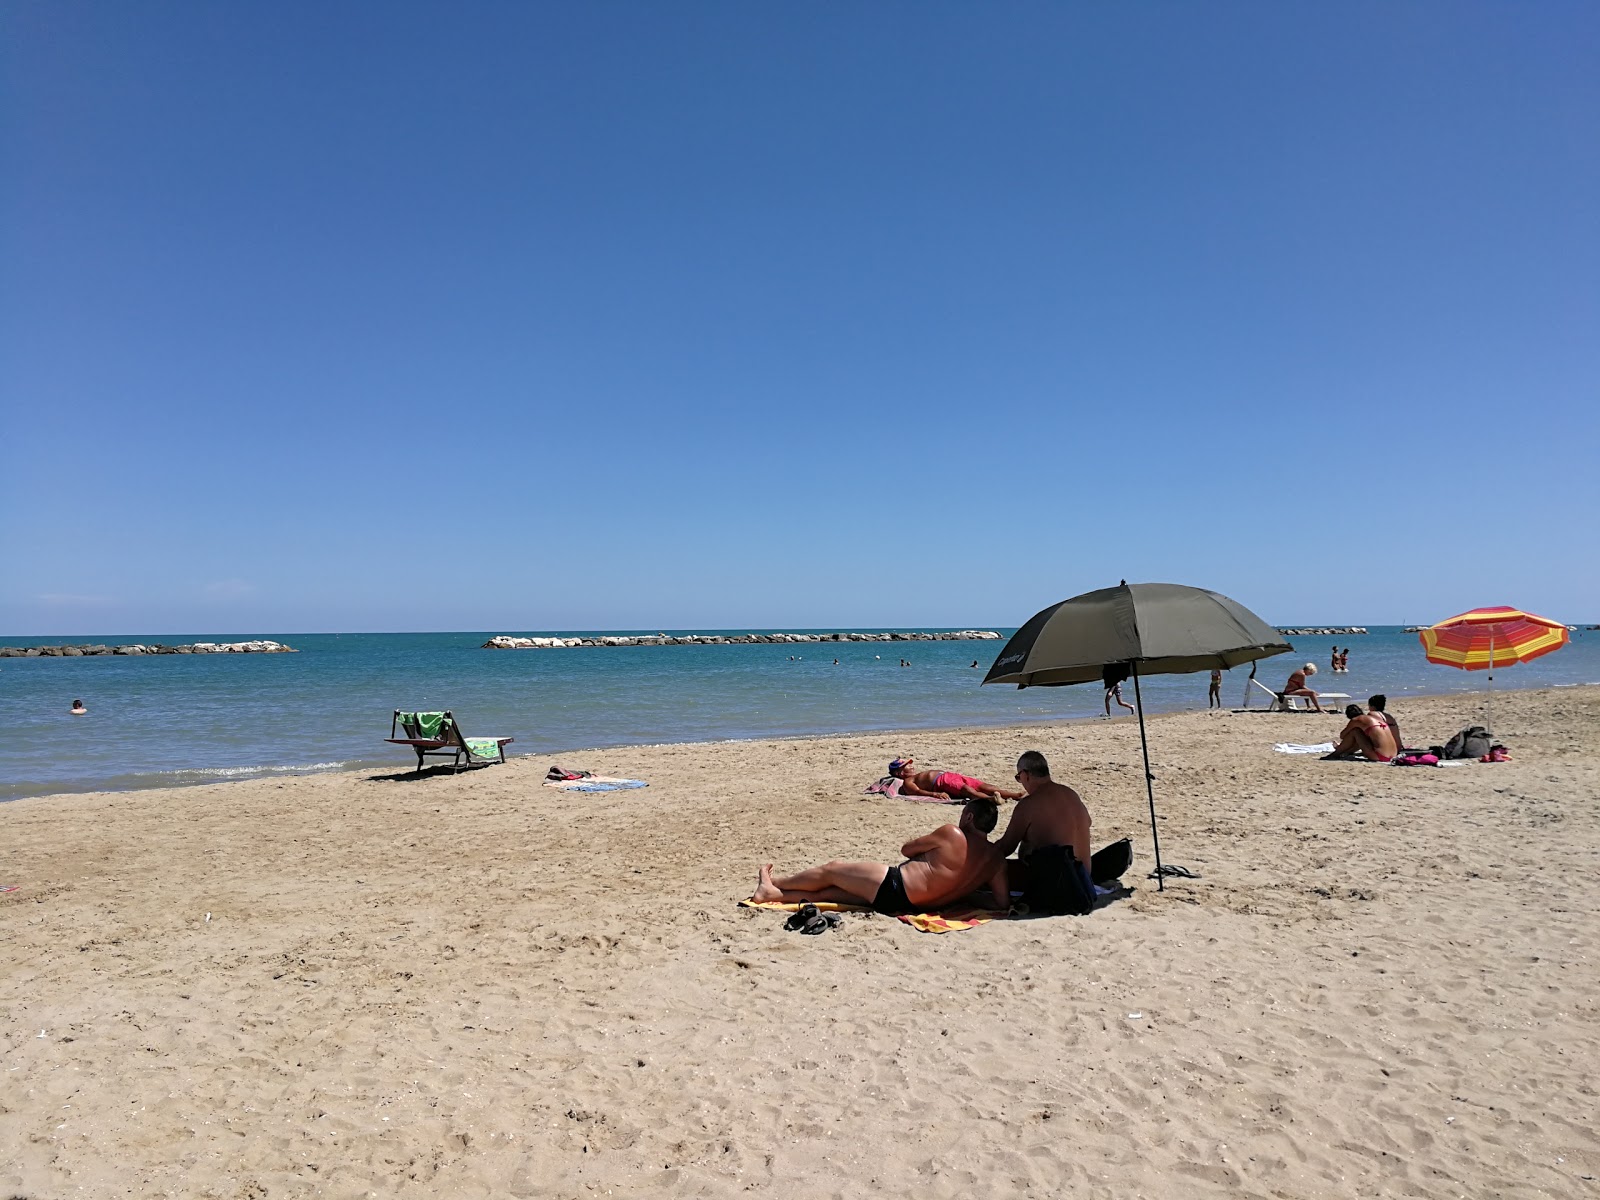 Pesaro beach III'in fotoğrafı plaj tatil beldesi alanı